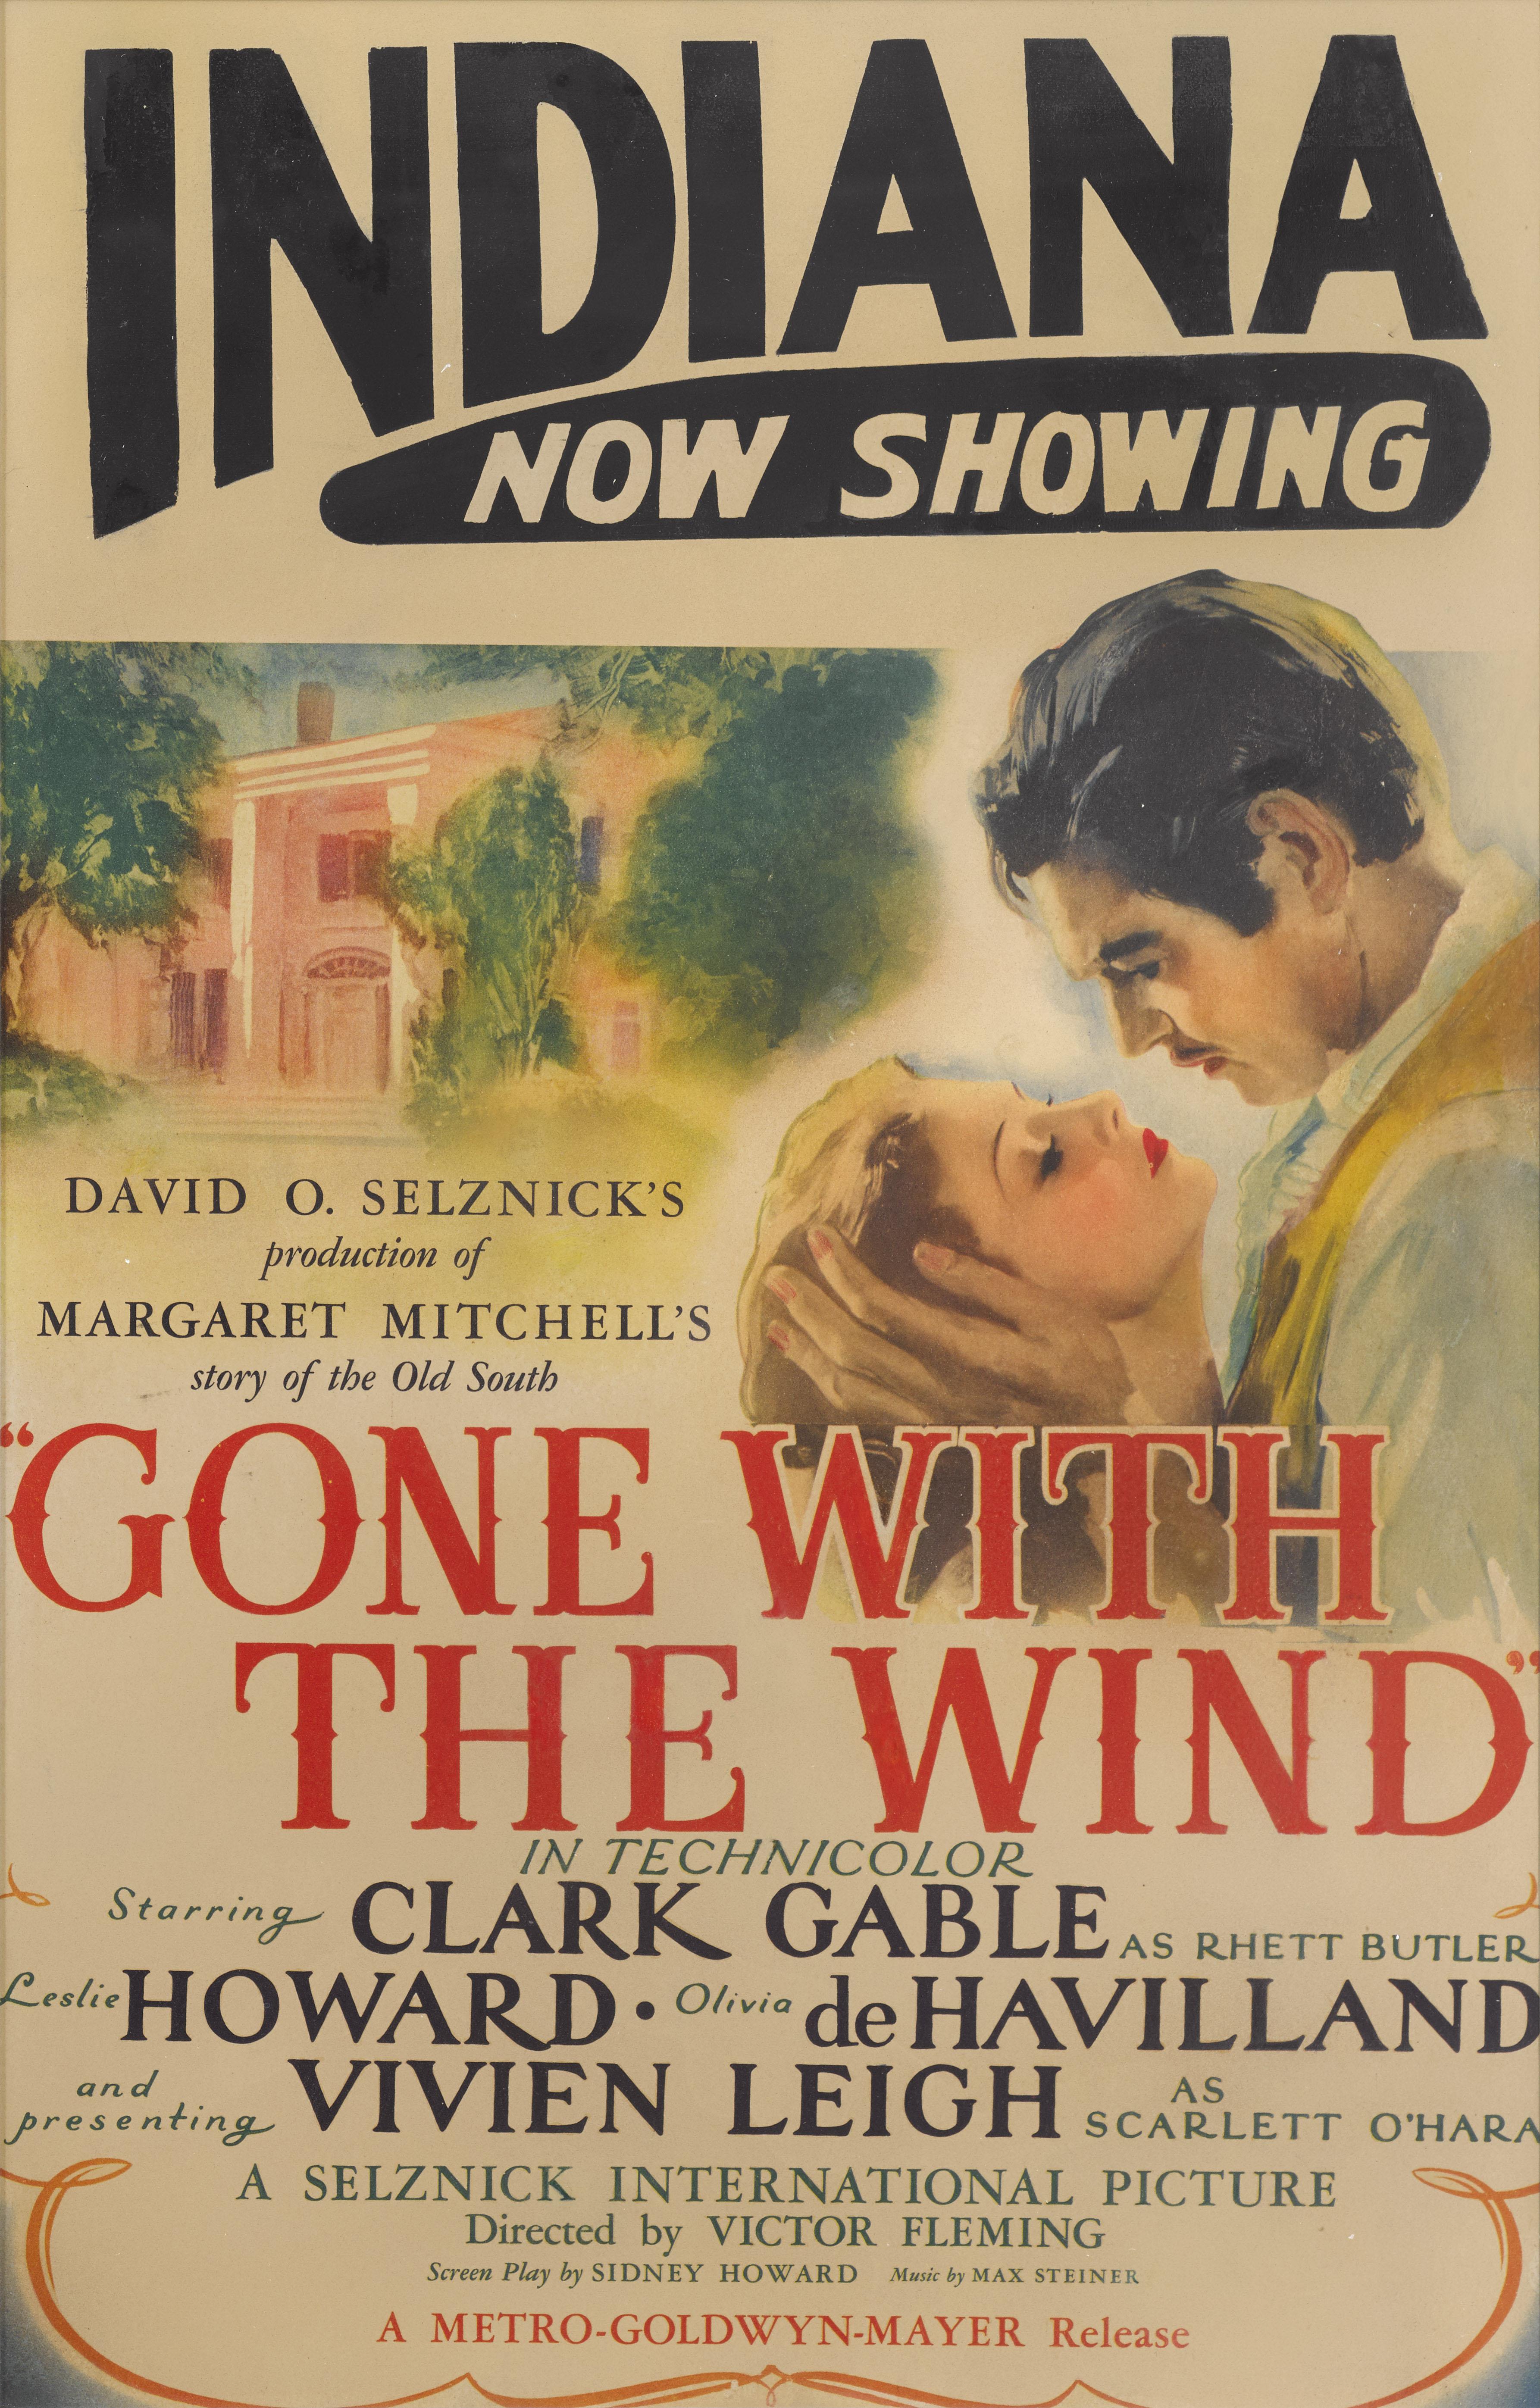 Originales US-Filmplakat für den bahnbrechenden Film von 1939 mit Clark Gable und Vivien Leigh in den Hauptrollen und unter der Regie von Victor Fleming, George Cukor und Sam Wood. Originalplakate zu diesem legendären Titel sind bei Sammlern sehr